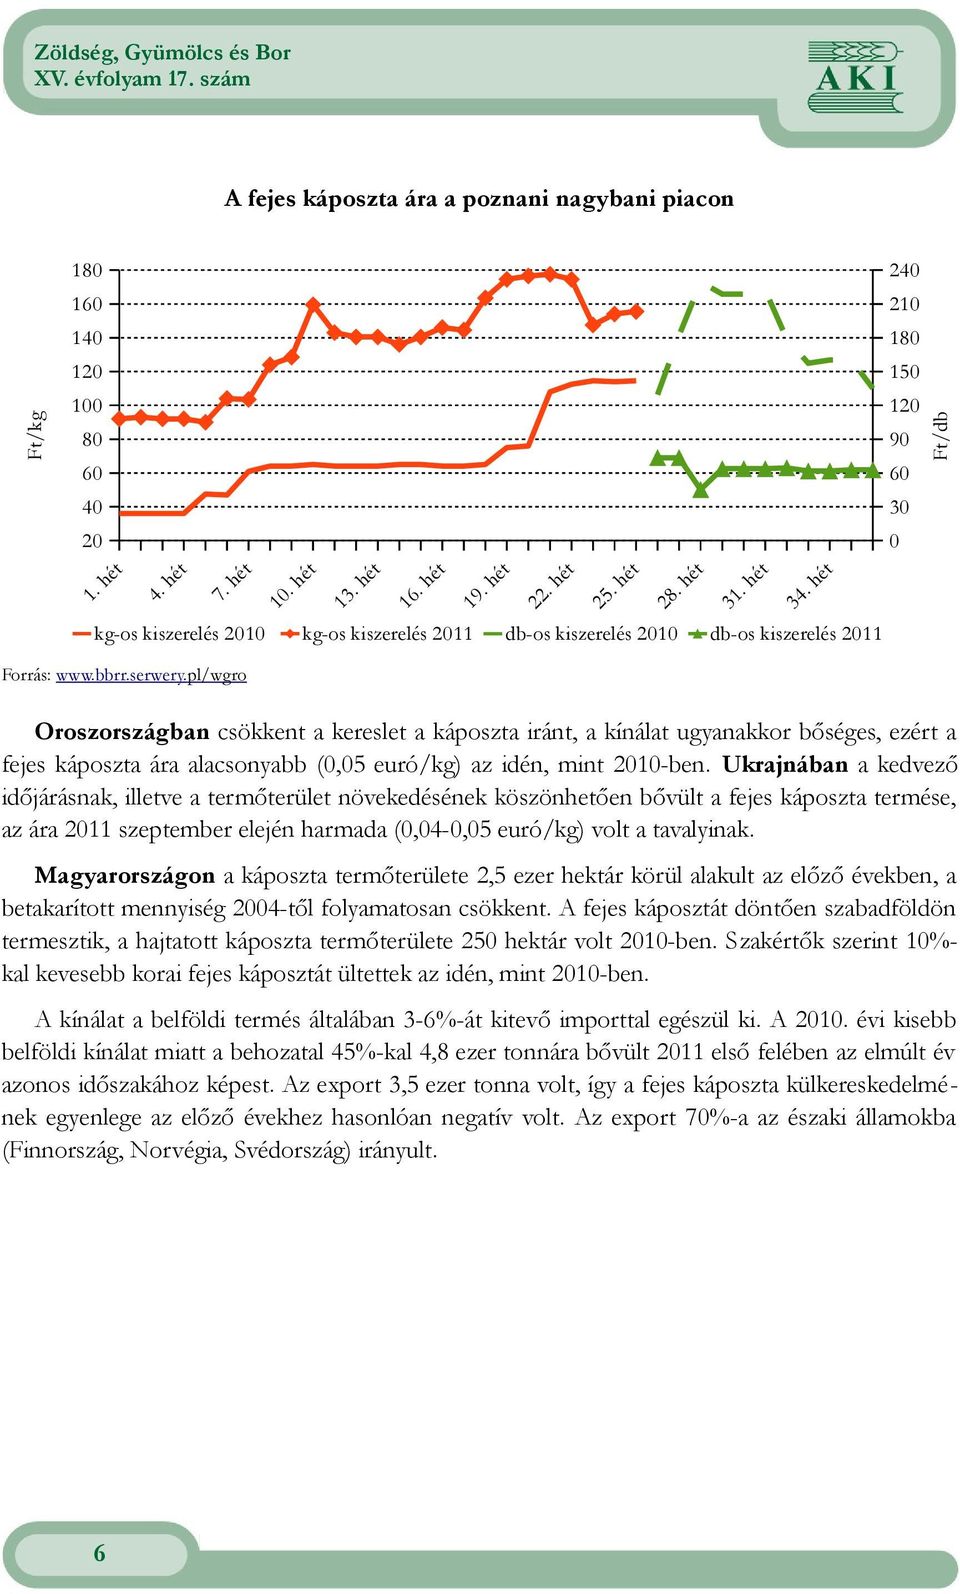 pl/wgro Oroszországban csökkent a kereslet a káposzta iránt, a kínálat ugyanakkor bőséges, ezért a fejes káposzta ára alacsonyabb (,5 euró/kg) az idén, mint 21-ben.